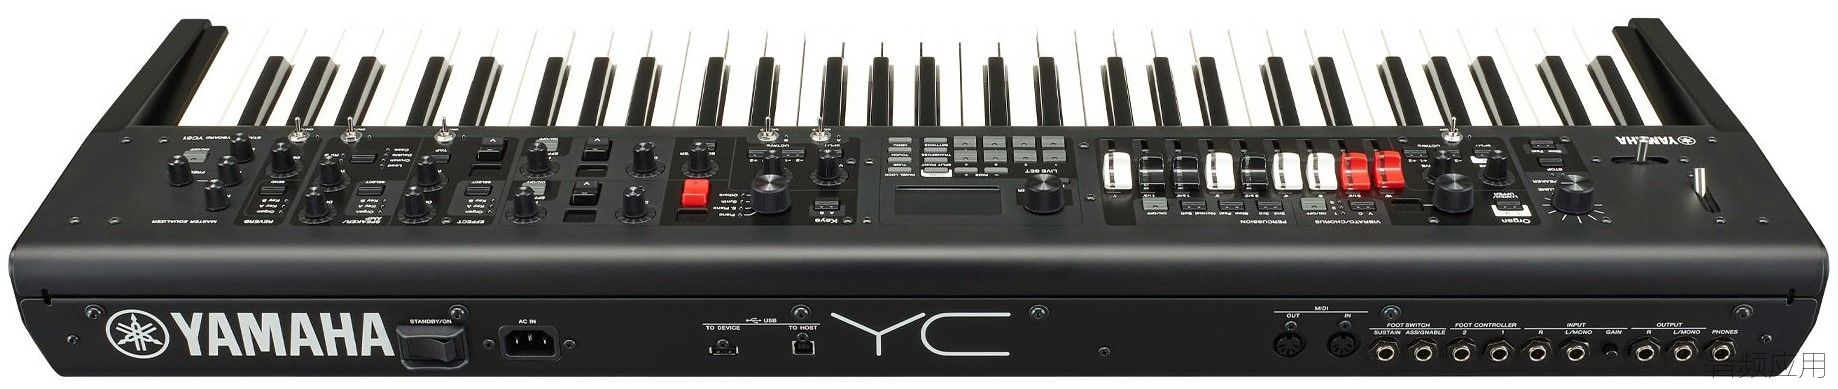 yamaha-yc61-stage-keyboard_1_1578650021.jpg